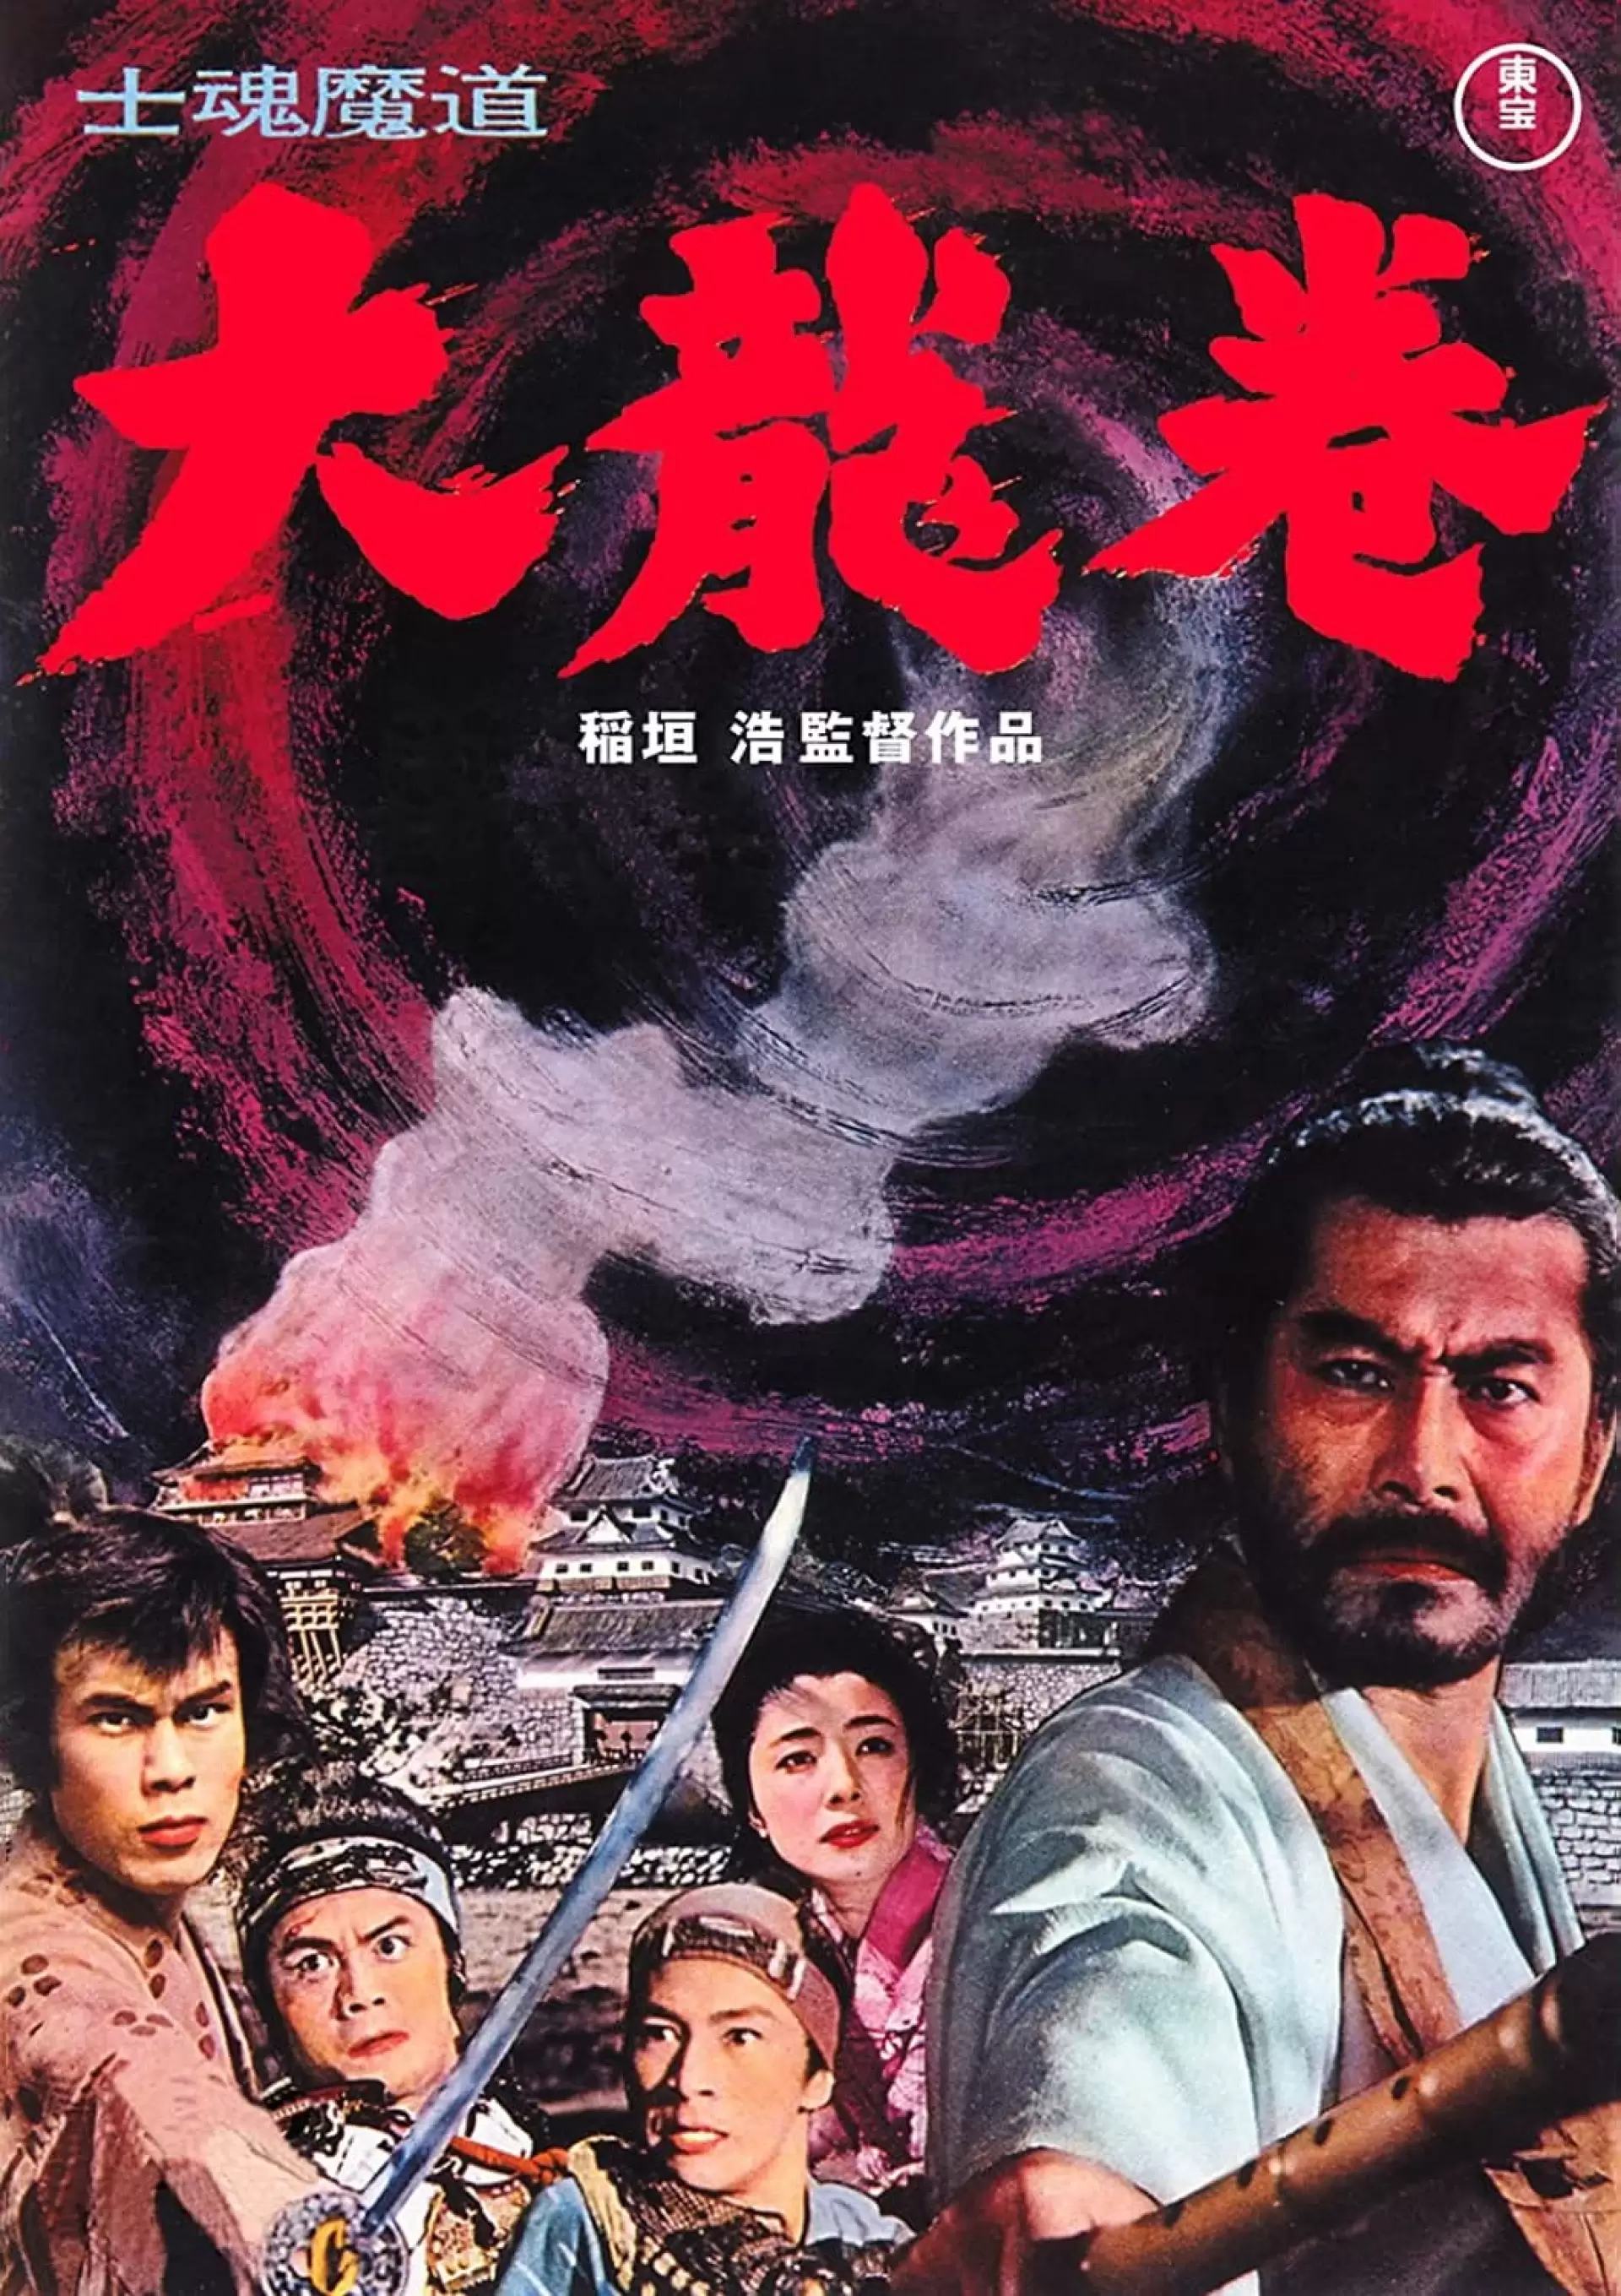 دانلود فیلم Shikonmado – Dai tatsumaki 1964